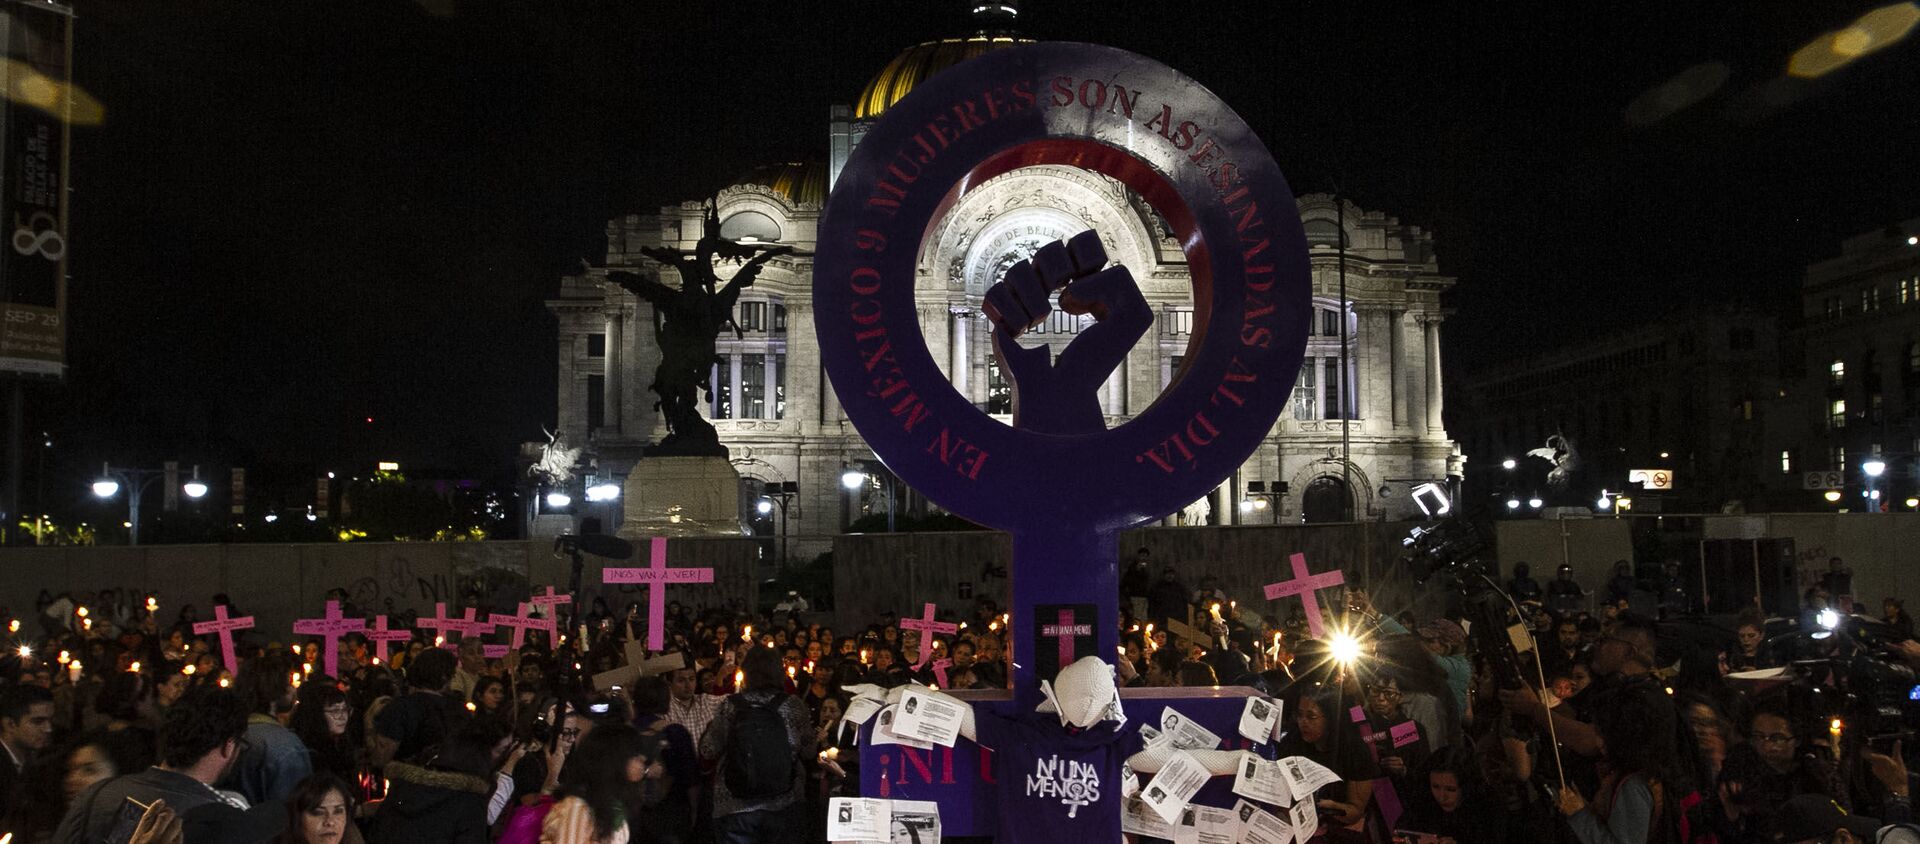 Ciudad de México conmemora con una velada a las víctimas de feminicidio - Sputnik Mundo, 1920, 25.11.2020